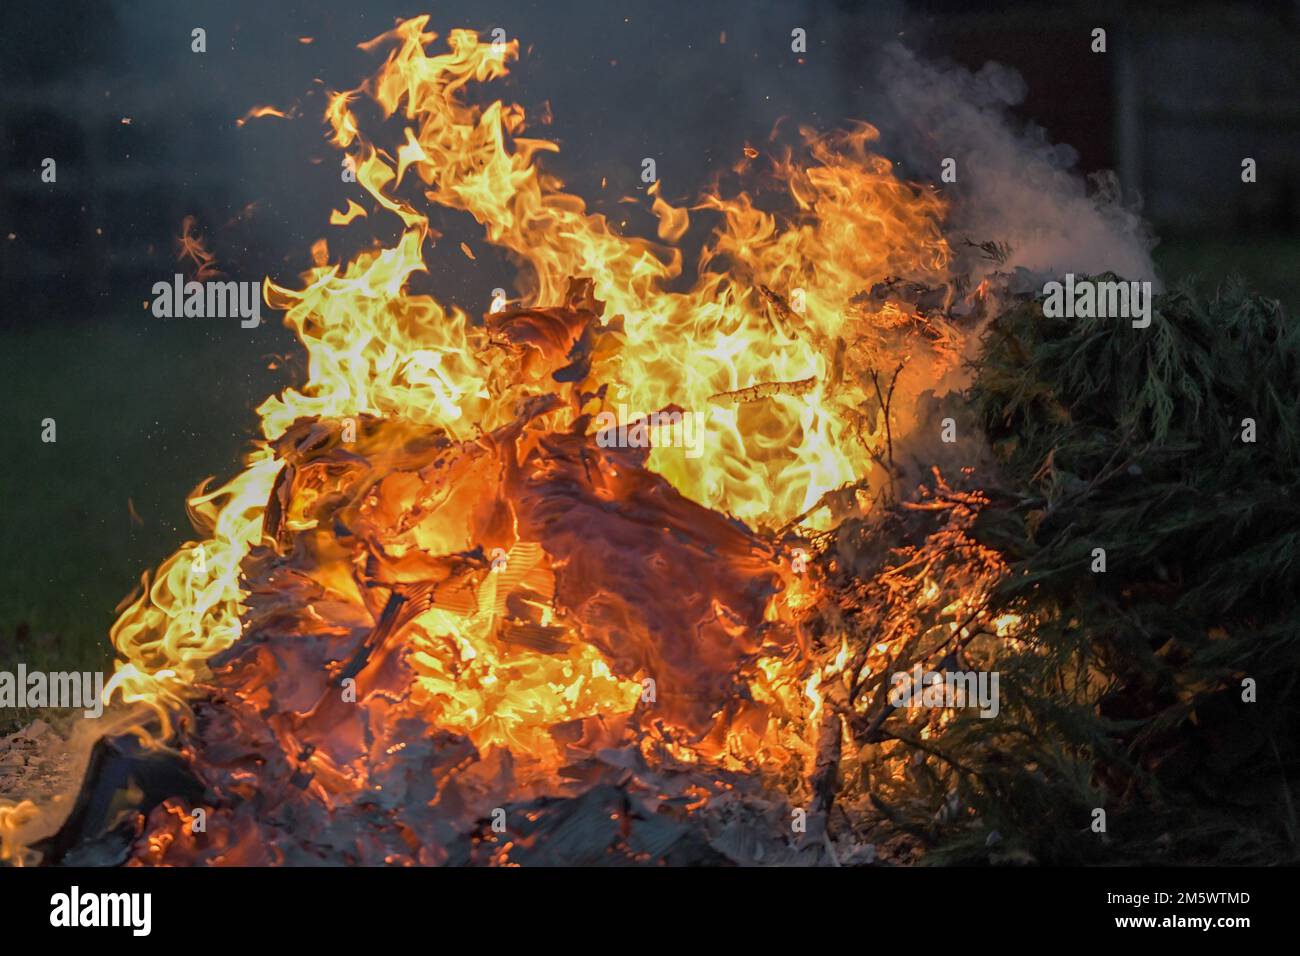 Un fuego furioso con profundas llamas naranjas y amarillas, hoguera de jardín Foto de stock